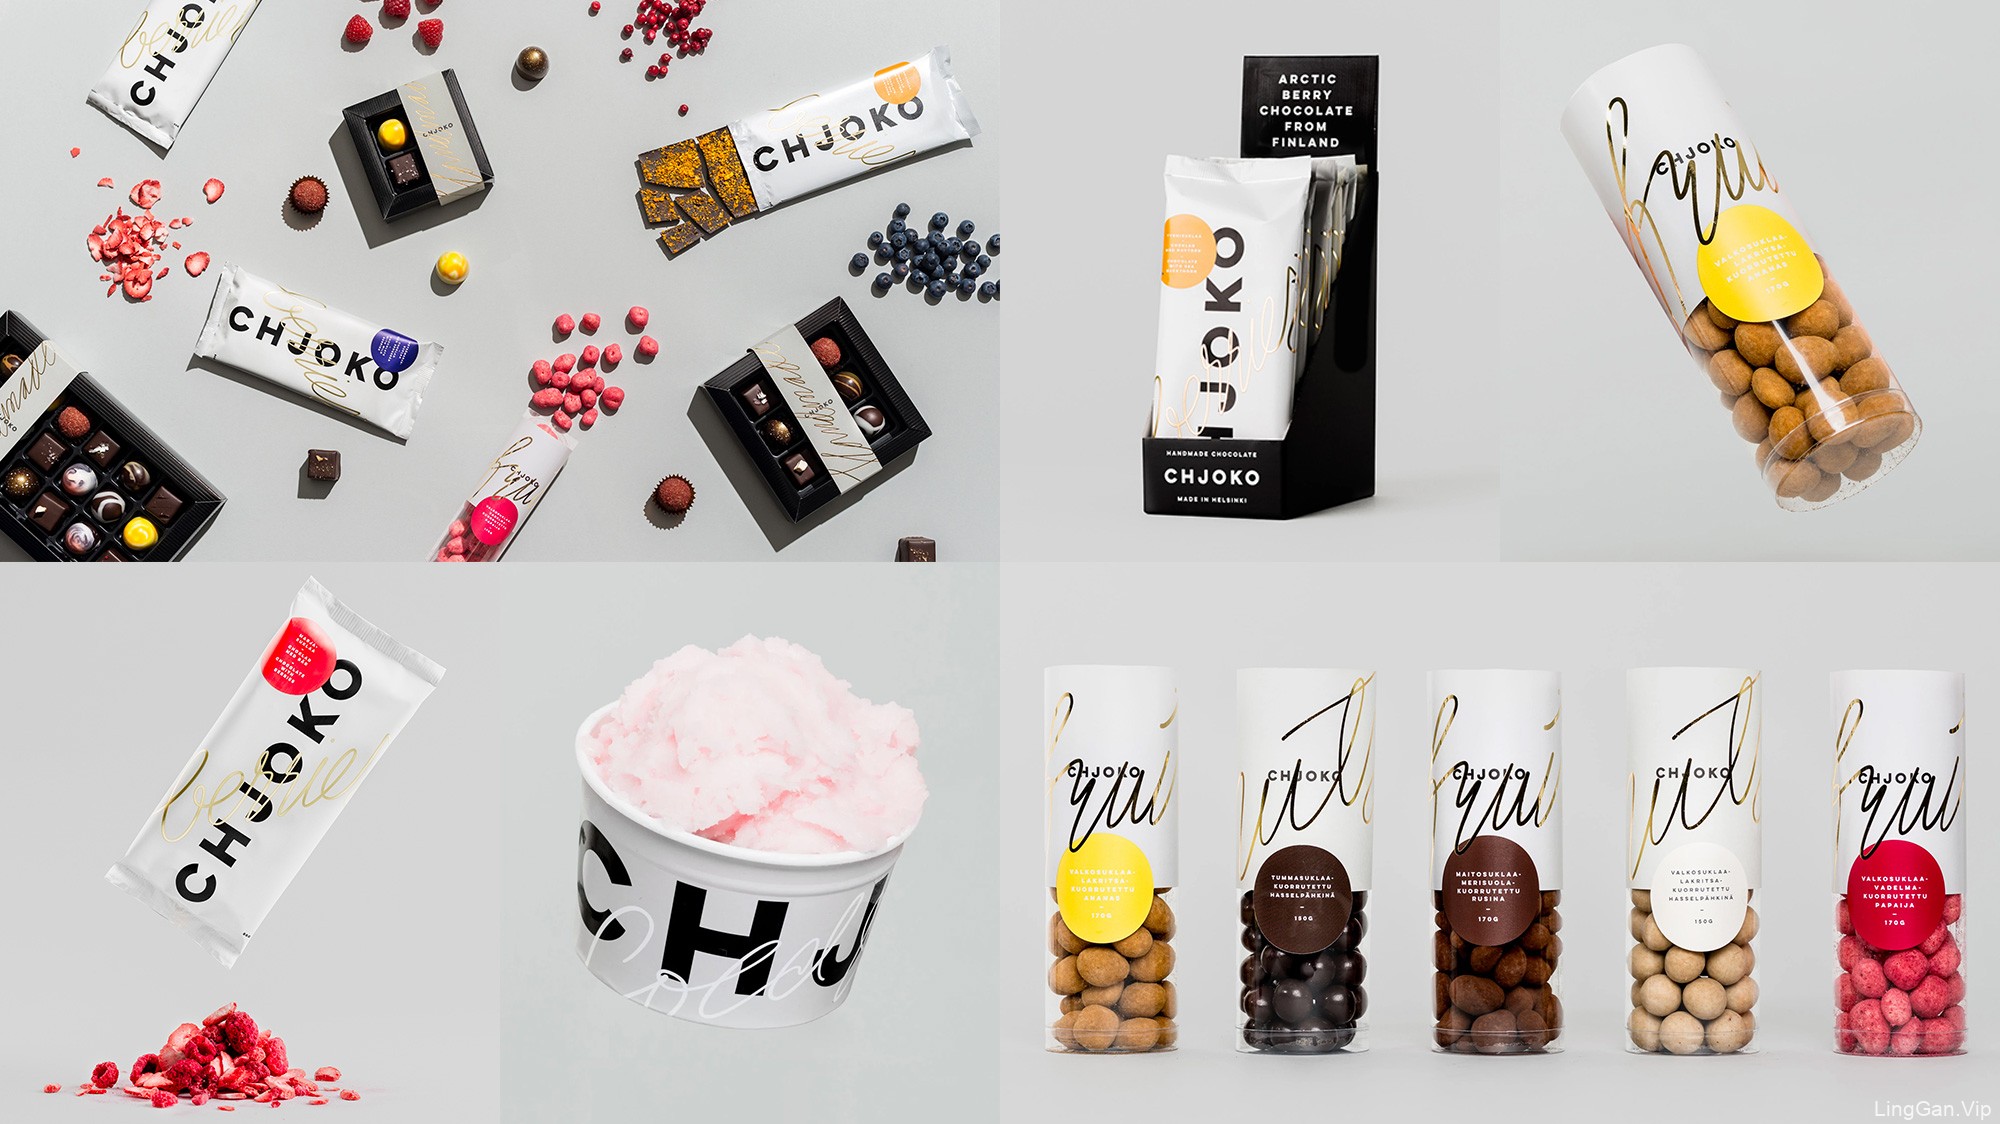 手工巧克力店Chjoko品牌和包装设计